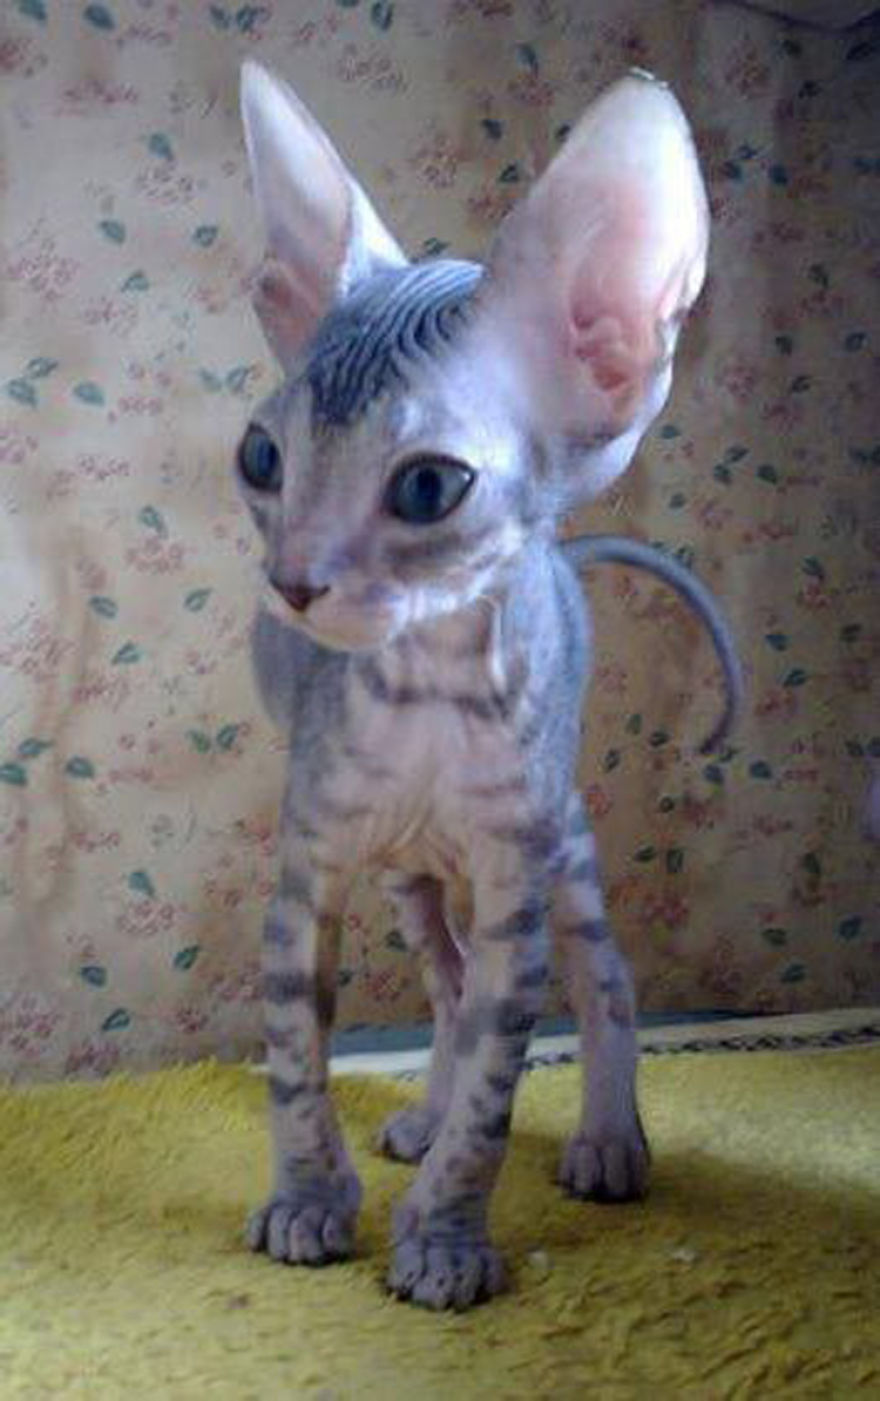 Hairless Kittens Or Adorable Little Aliens